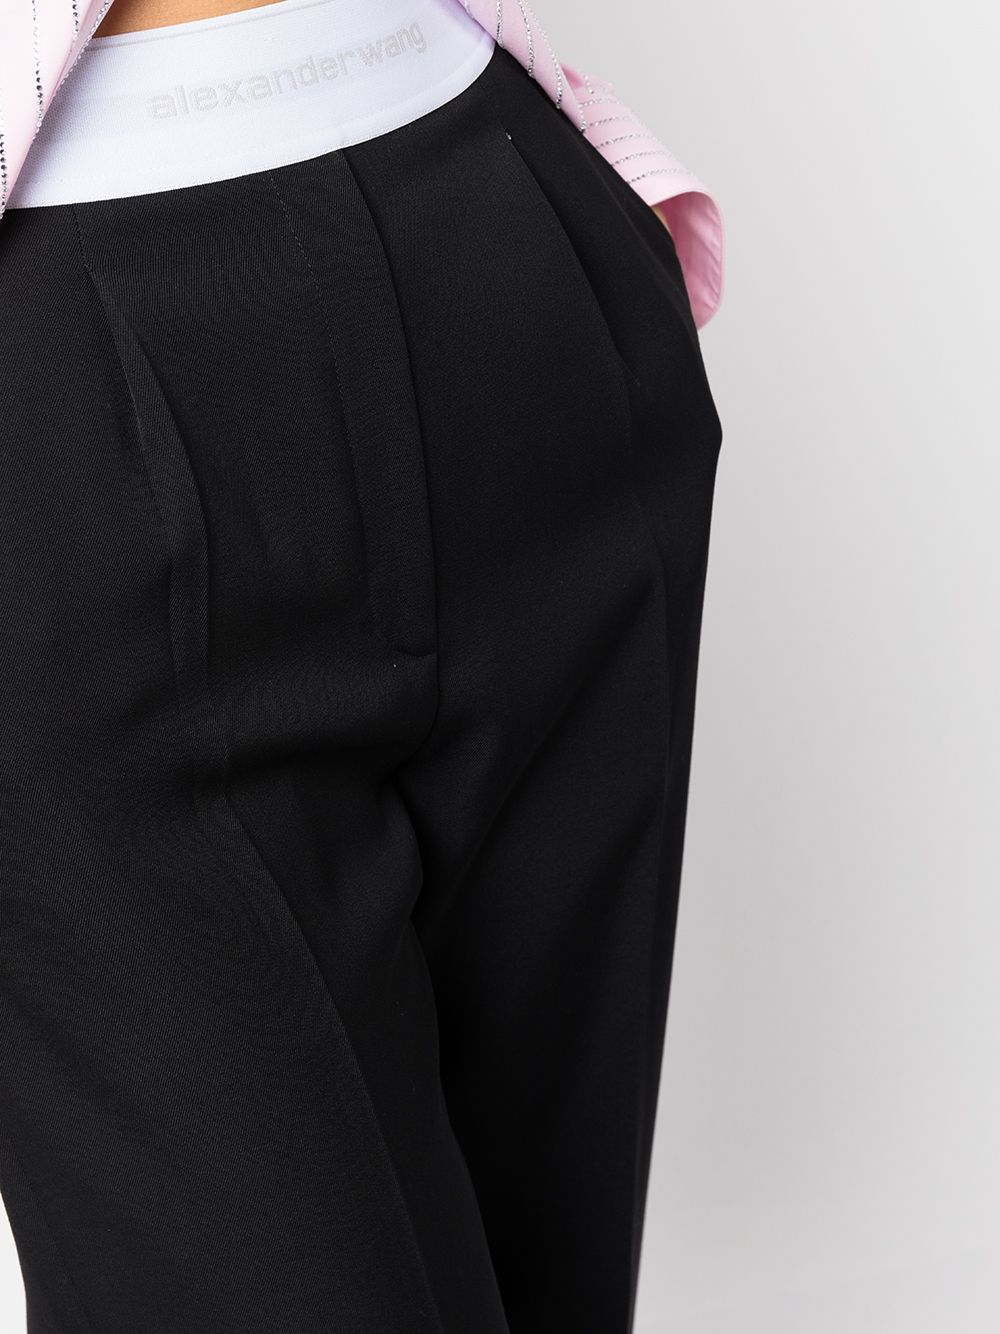 Alexander Wang logo-waist Tailored Trousers - Farfetch